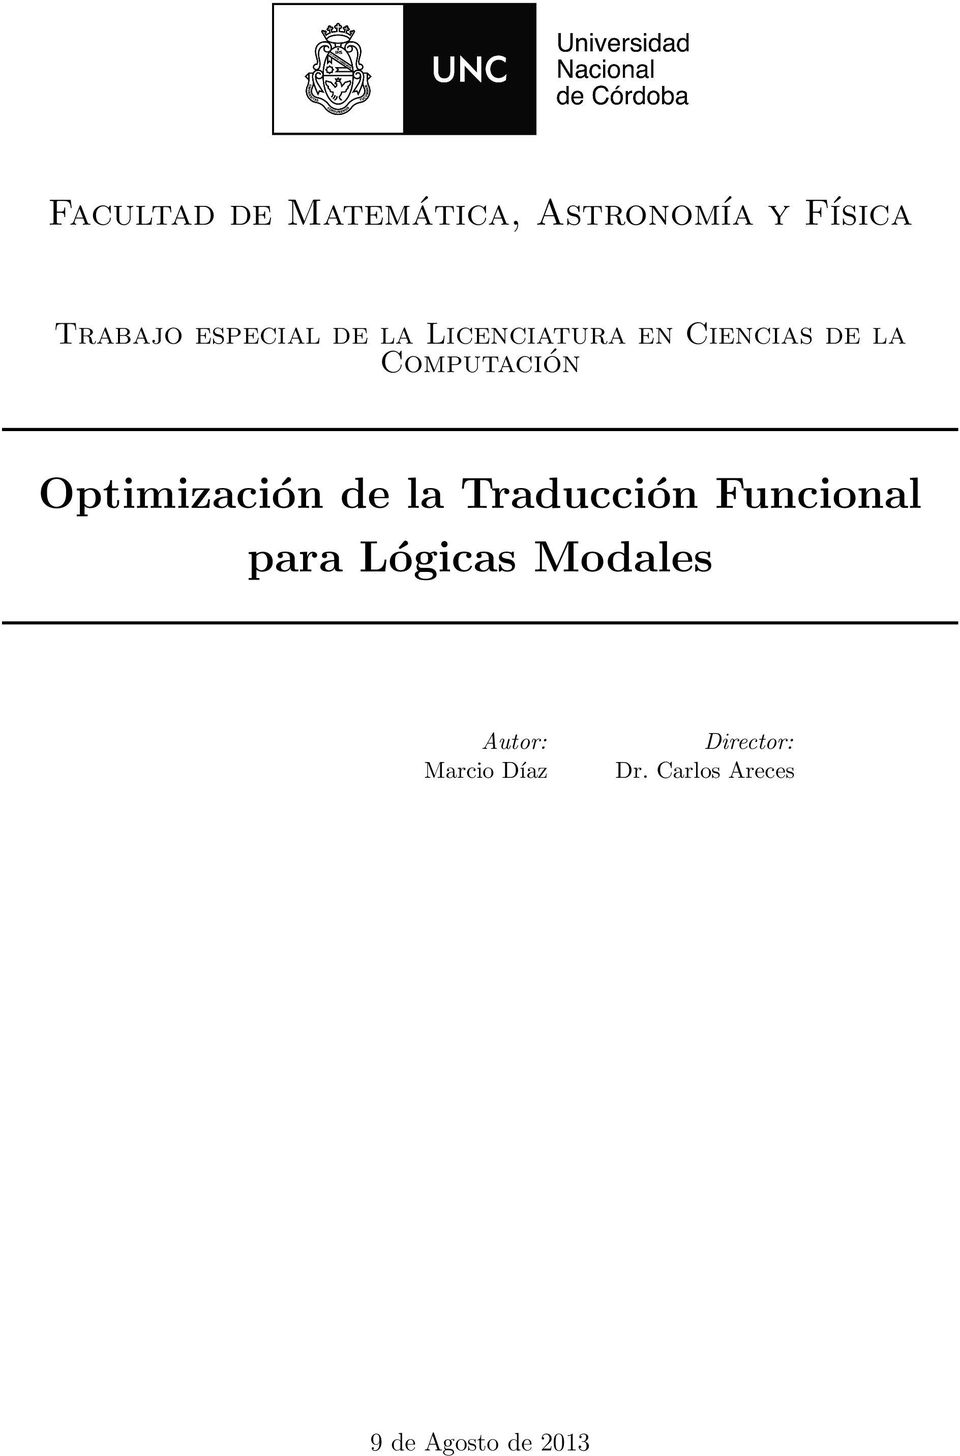 Optimización de la Traducción Funcional para Lógicas